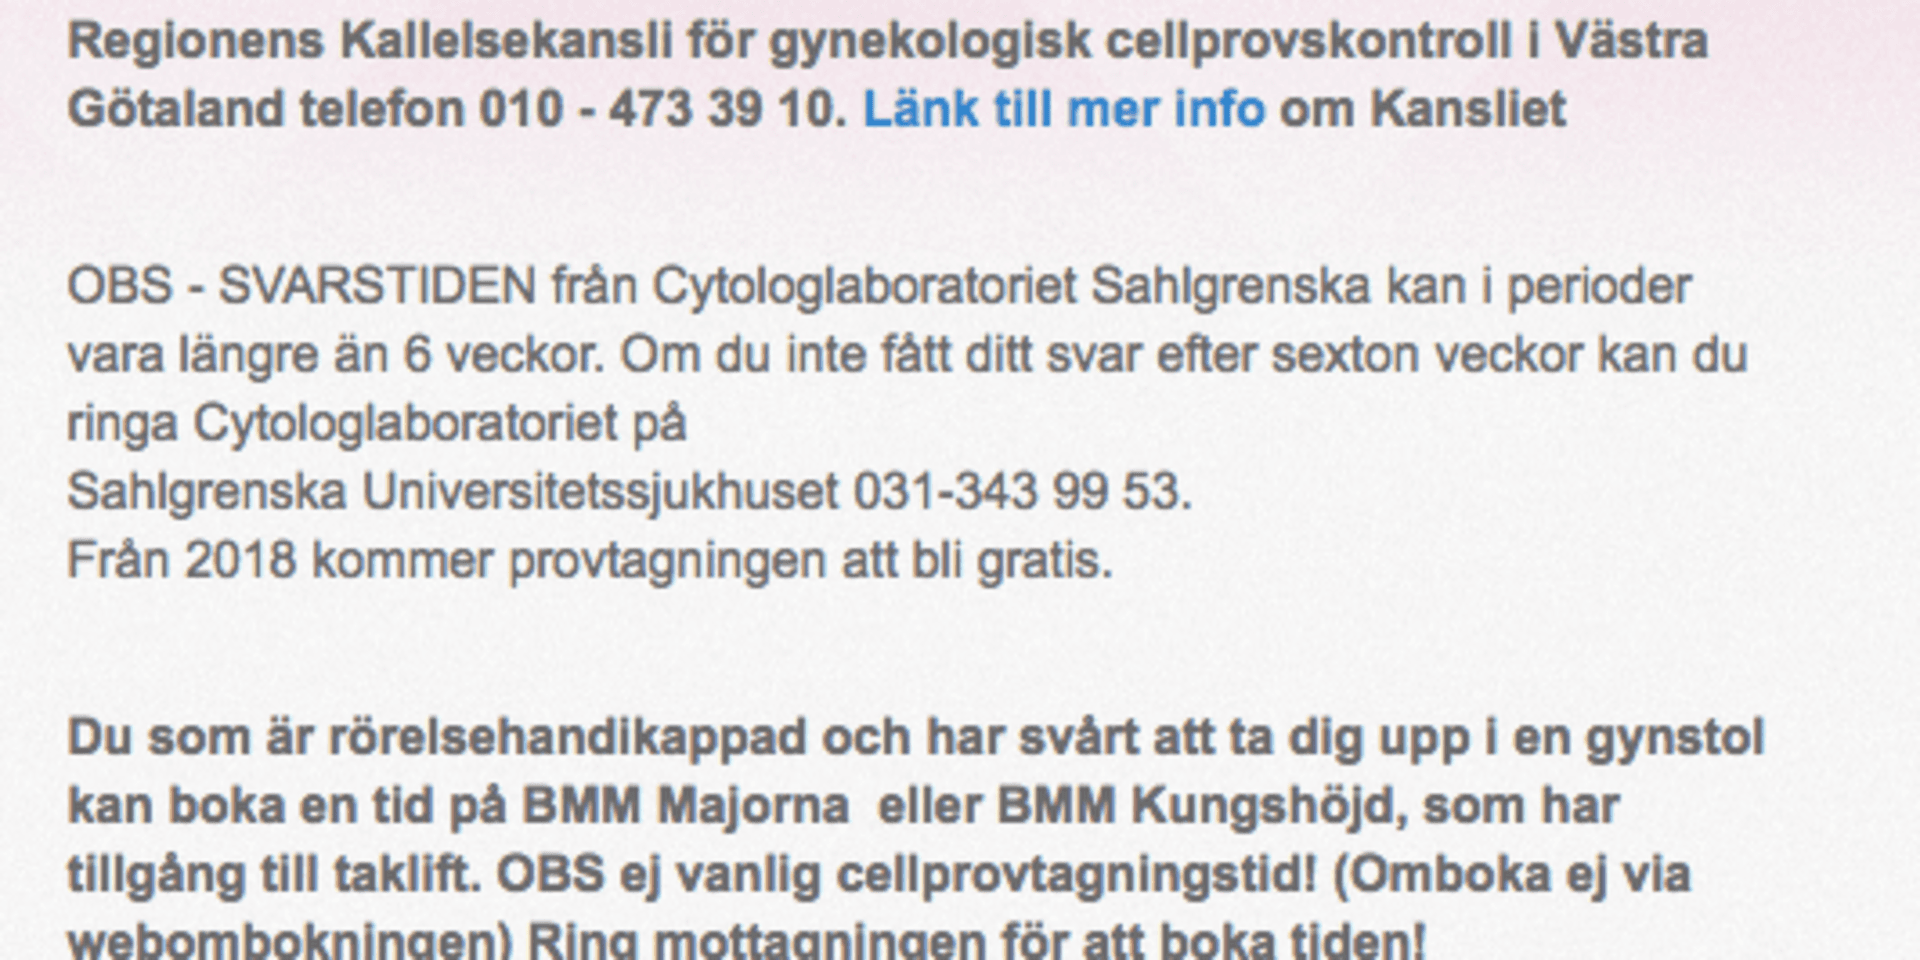 Informationen som ges till kvinnor i Västra Götaland och Halland på cellprov.se.